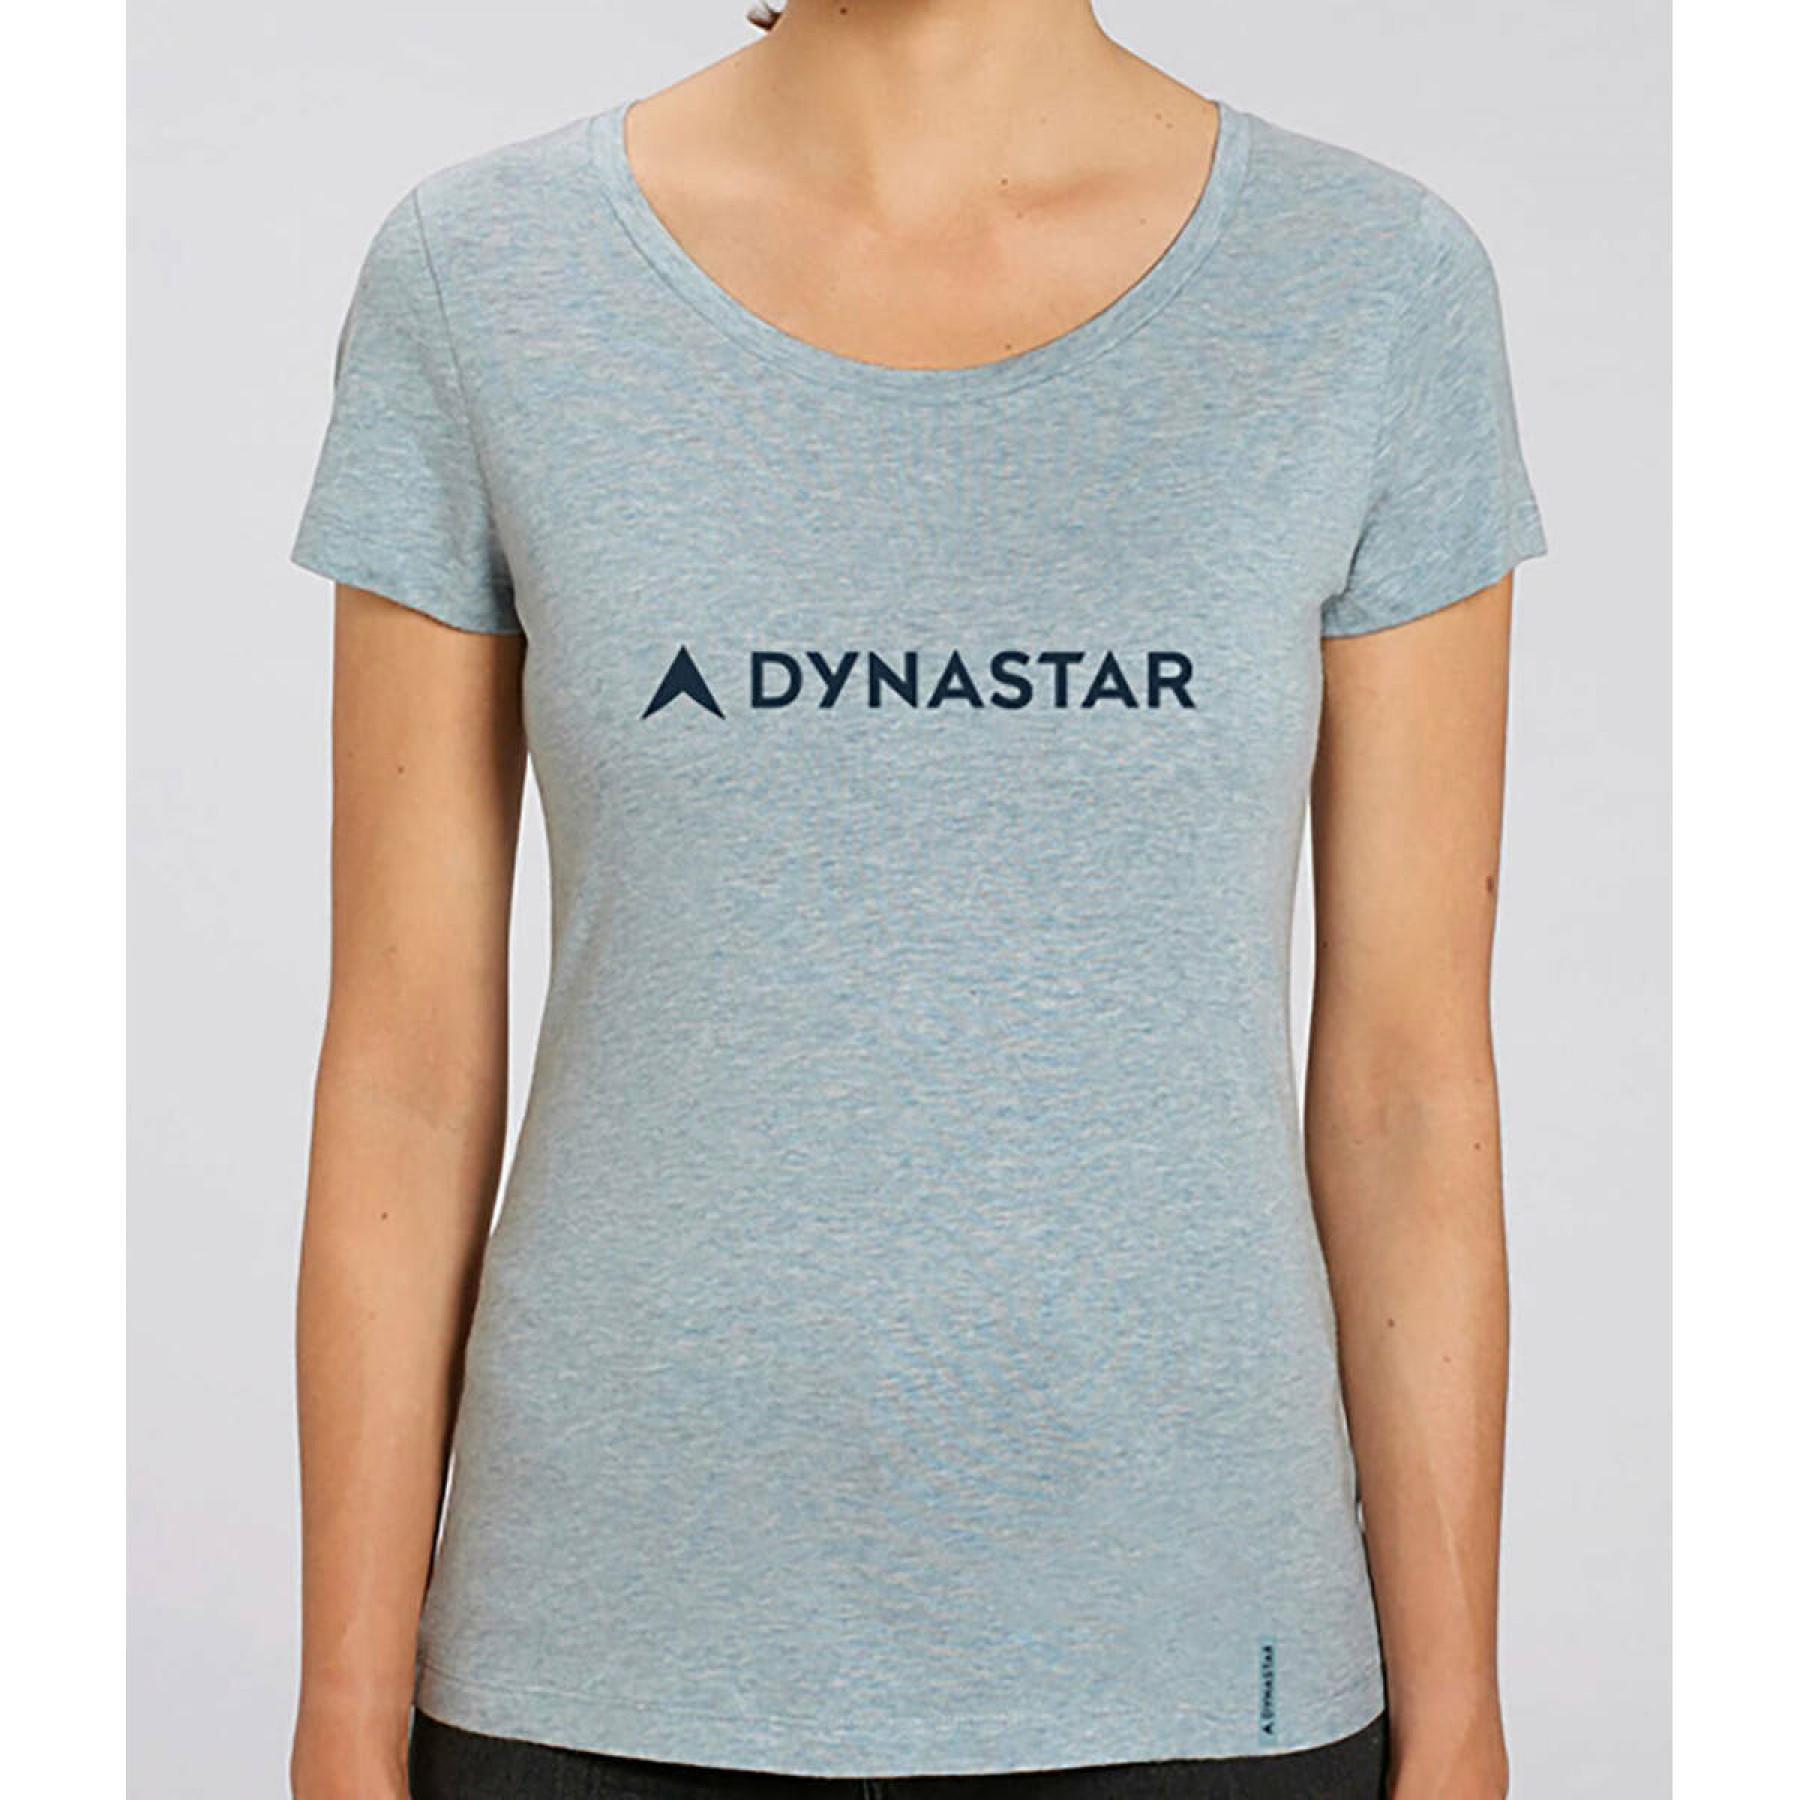 T-shirt woman Dynastar